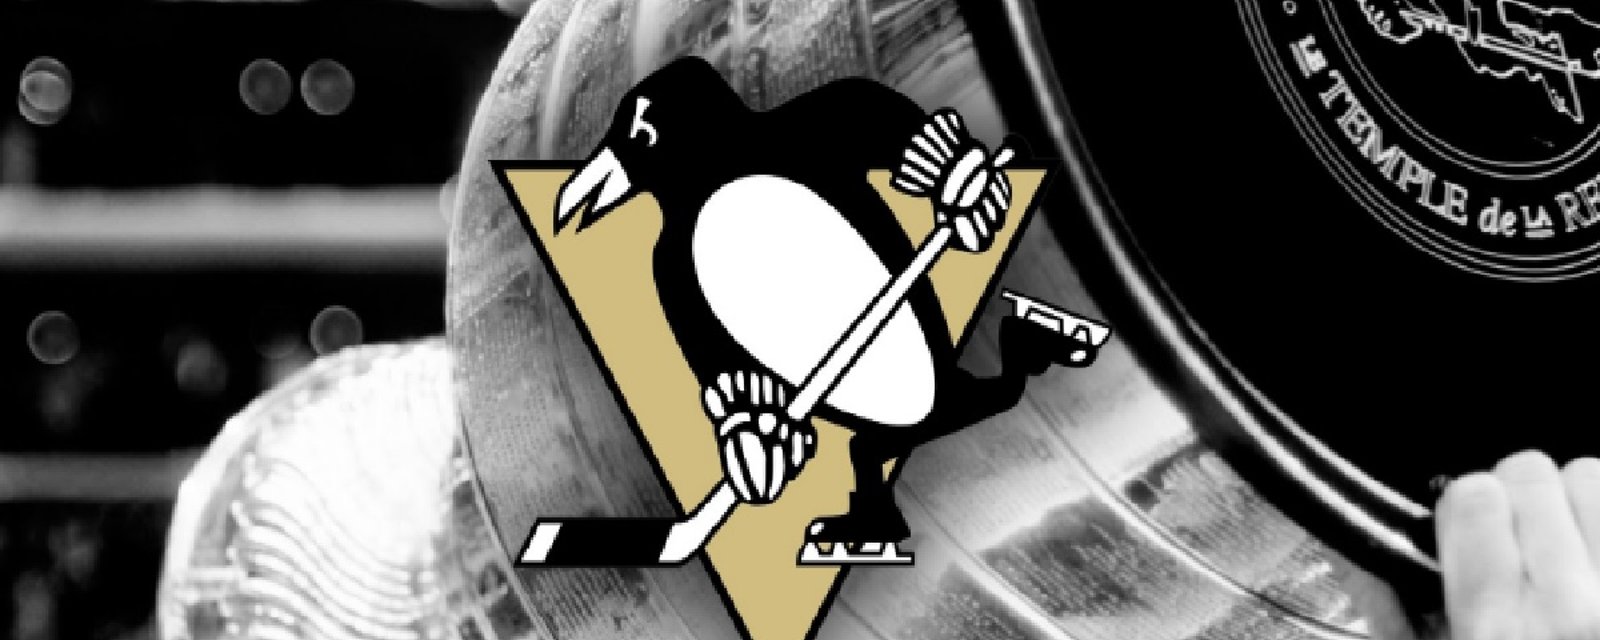 Des changements importants chez les Penguins ce soir!